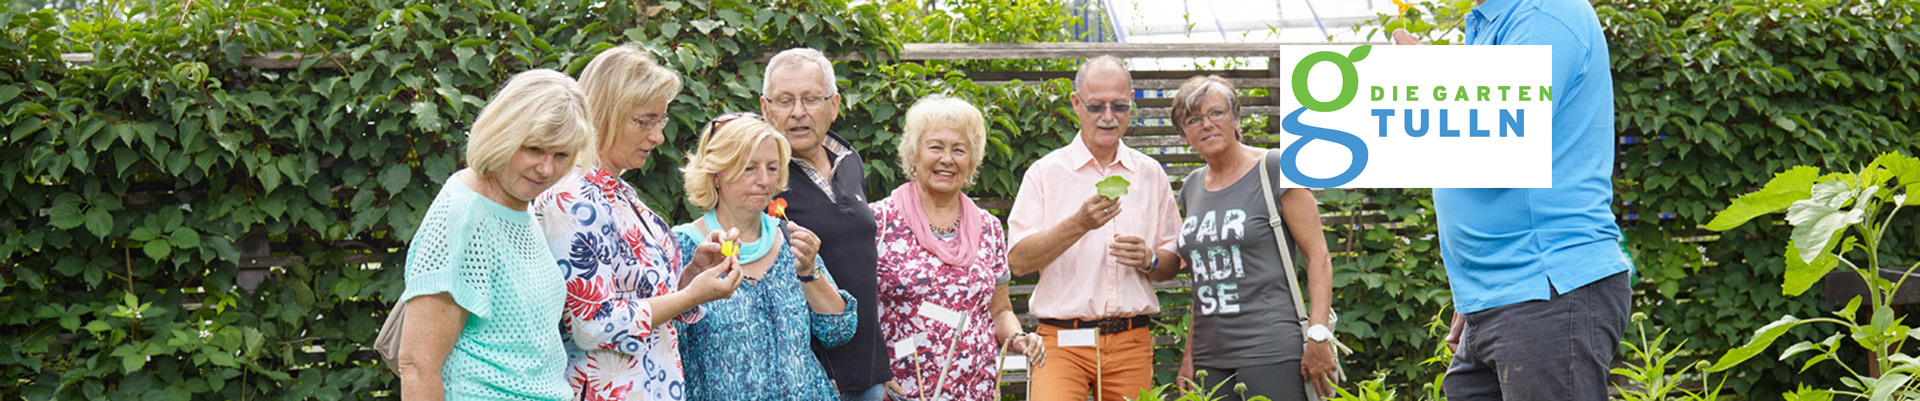 Das Headerbild zeigt eine Personengruppe, die bei einem Pflanzenbeet steht und von einem Gärtner essbare Blüten zum Verkosten bekommt.